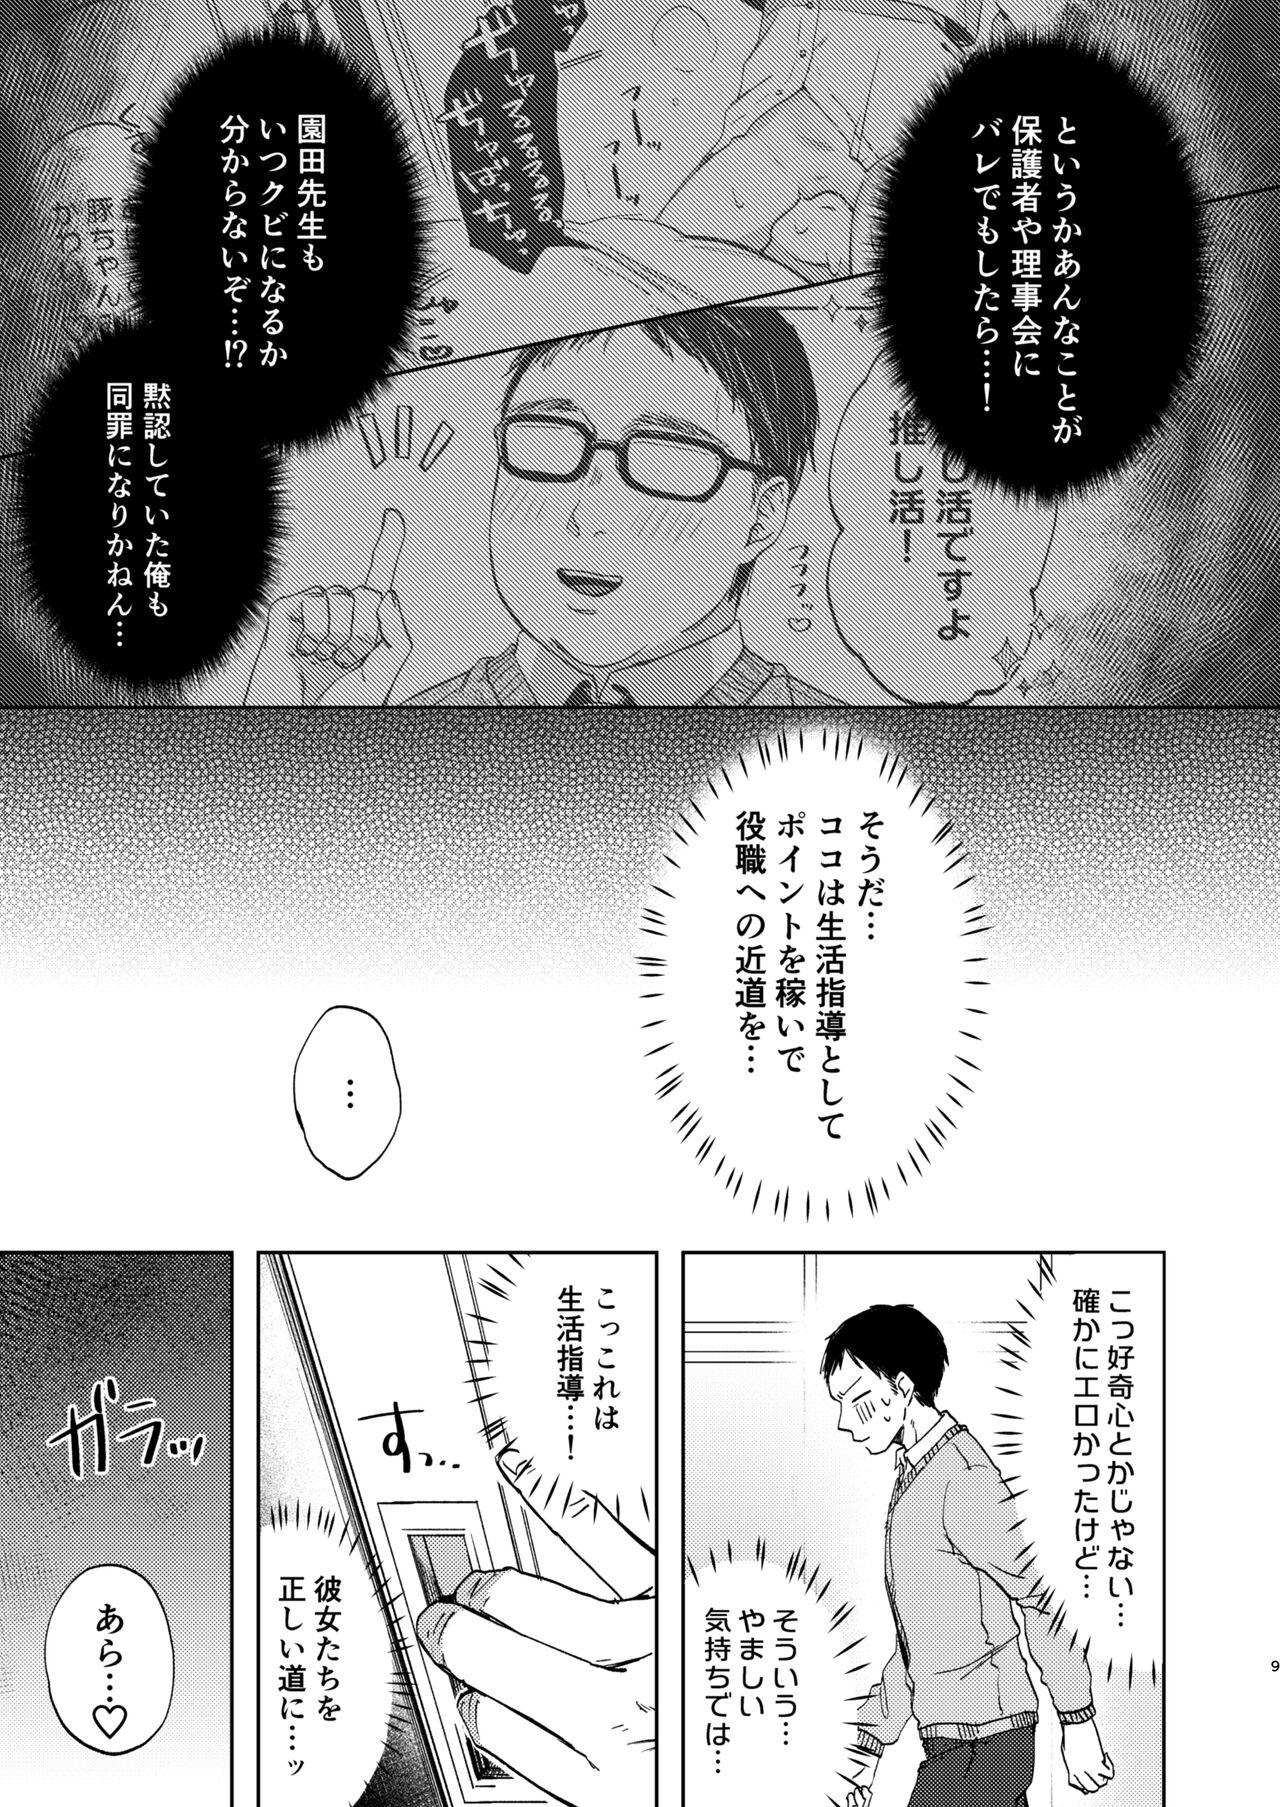 Glasses Kono Gakuen ni wa Himitsu no Shibo sei-bu ga arurashi… - Original Camgirl - Page 10